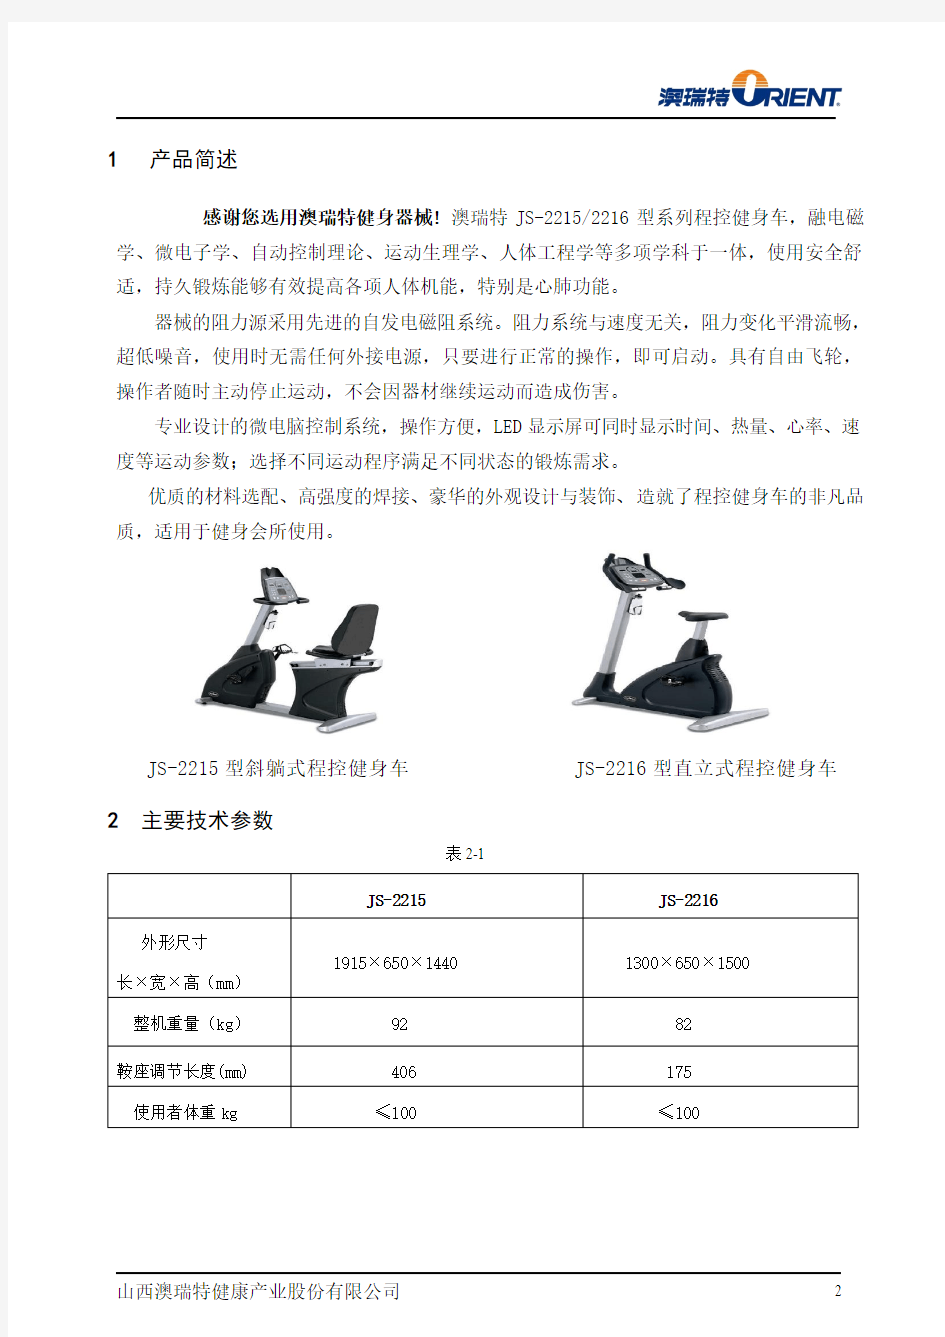 澳瑞特商用型两款健身车JS-2215、JS-2216中文说明书说明书